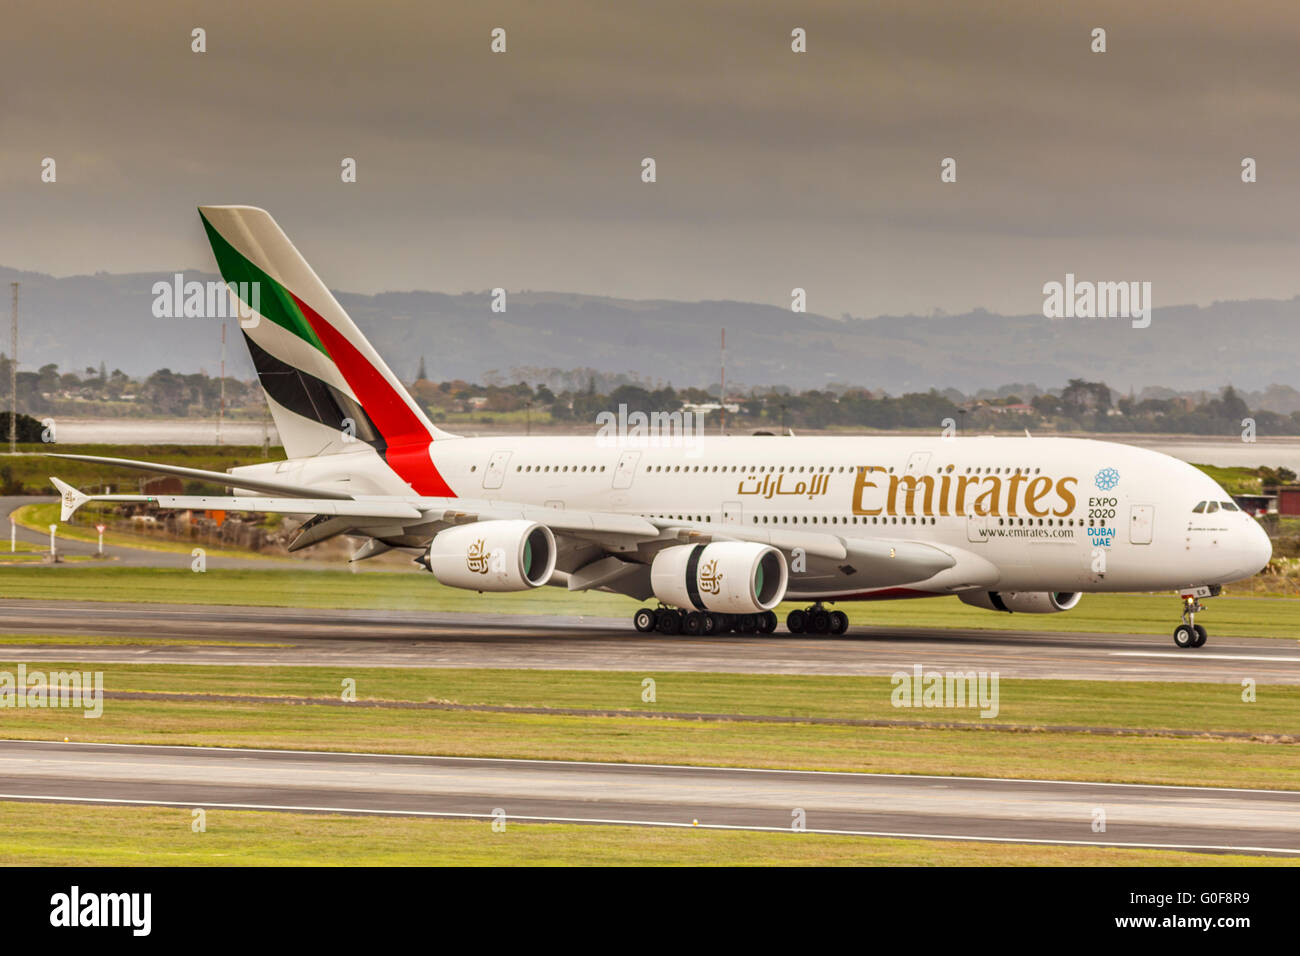 Emirates Airline Airbus A380 aerei jet super jumbo appena atterrato sulla pista di AKI aeroporto,Auckland,l'isola nord,Nuova Zelanda Foto Stock